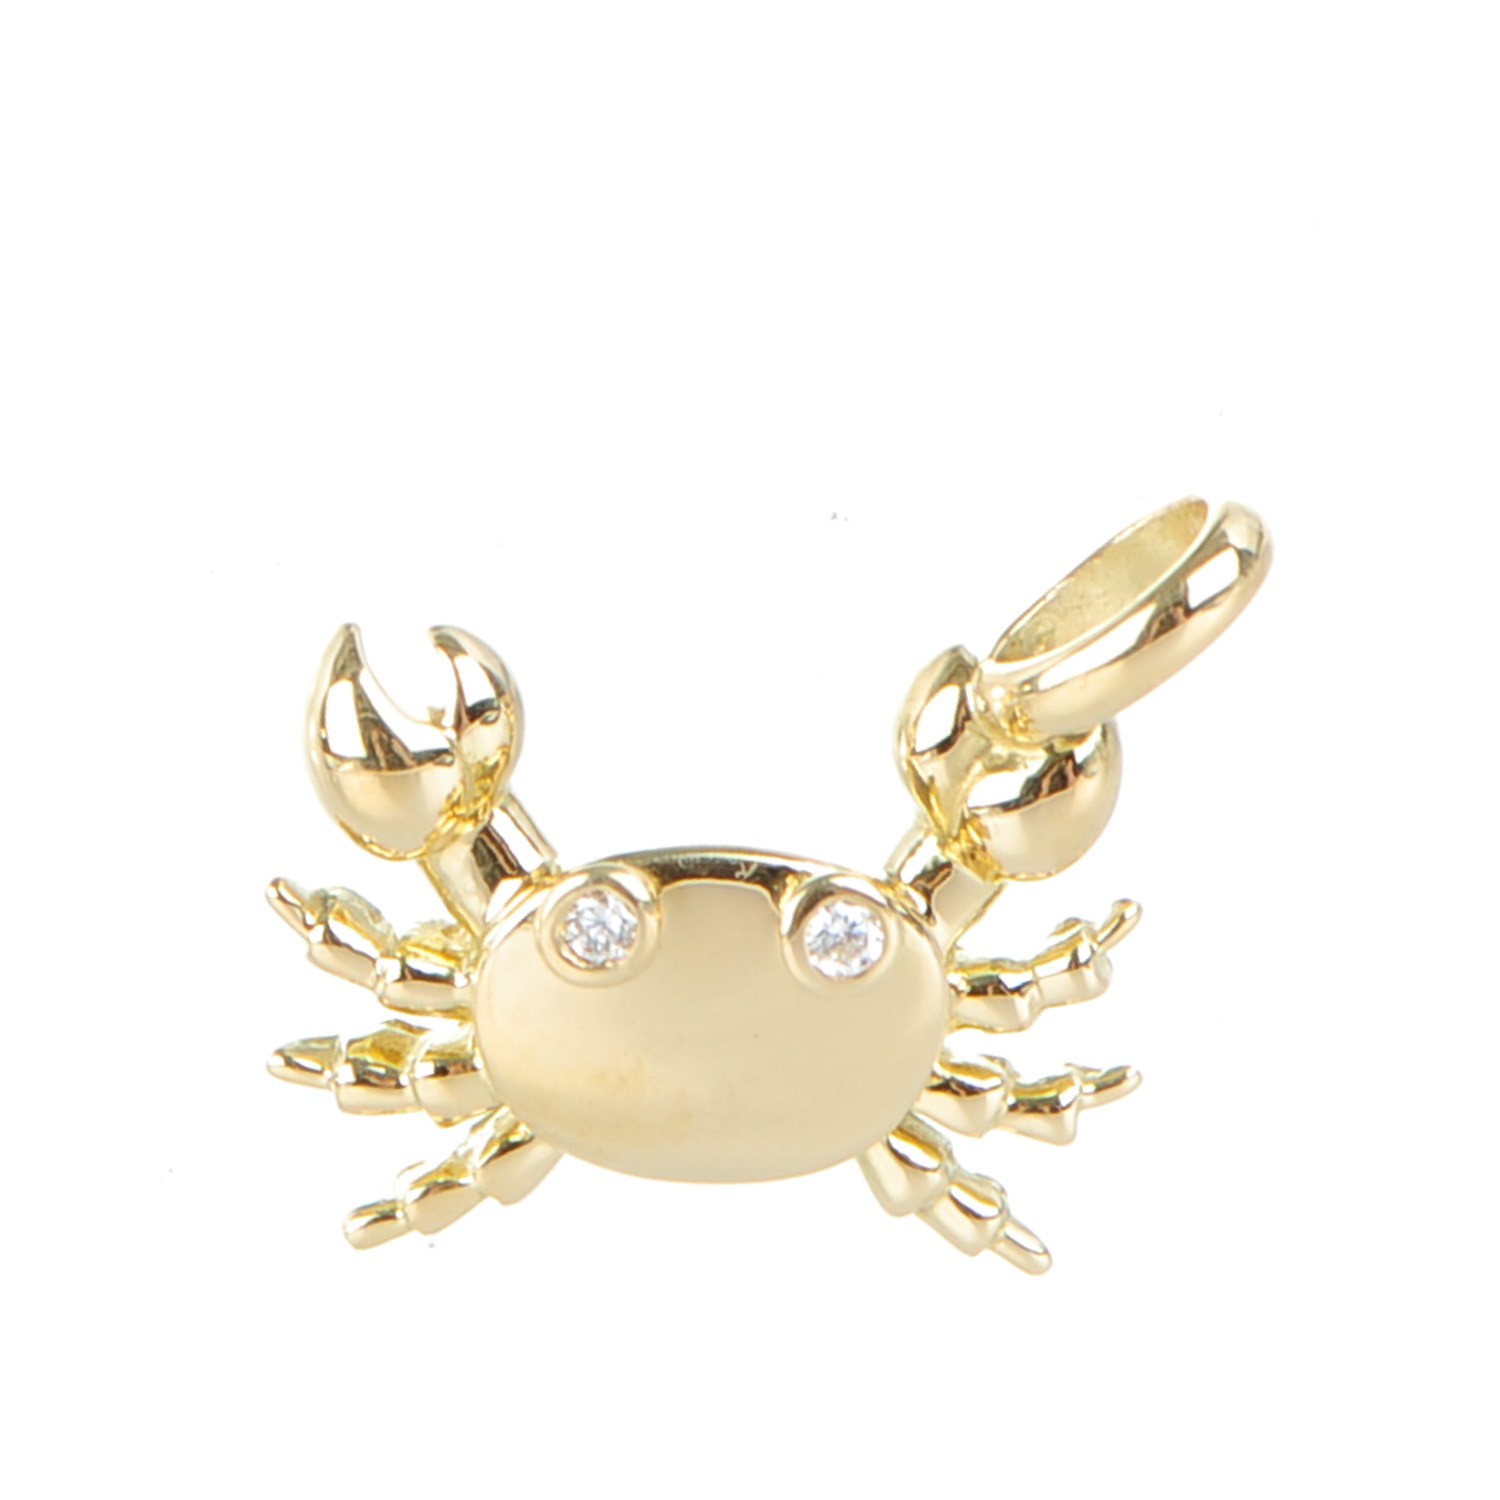 crab necklace tiffany